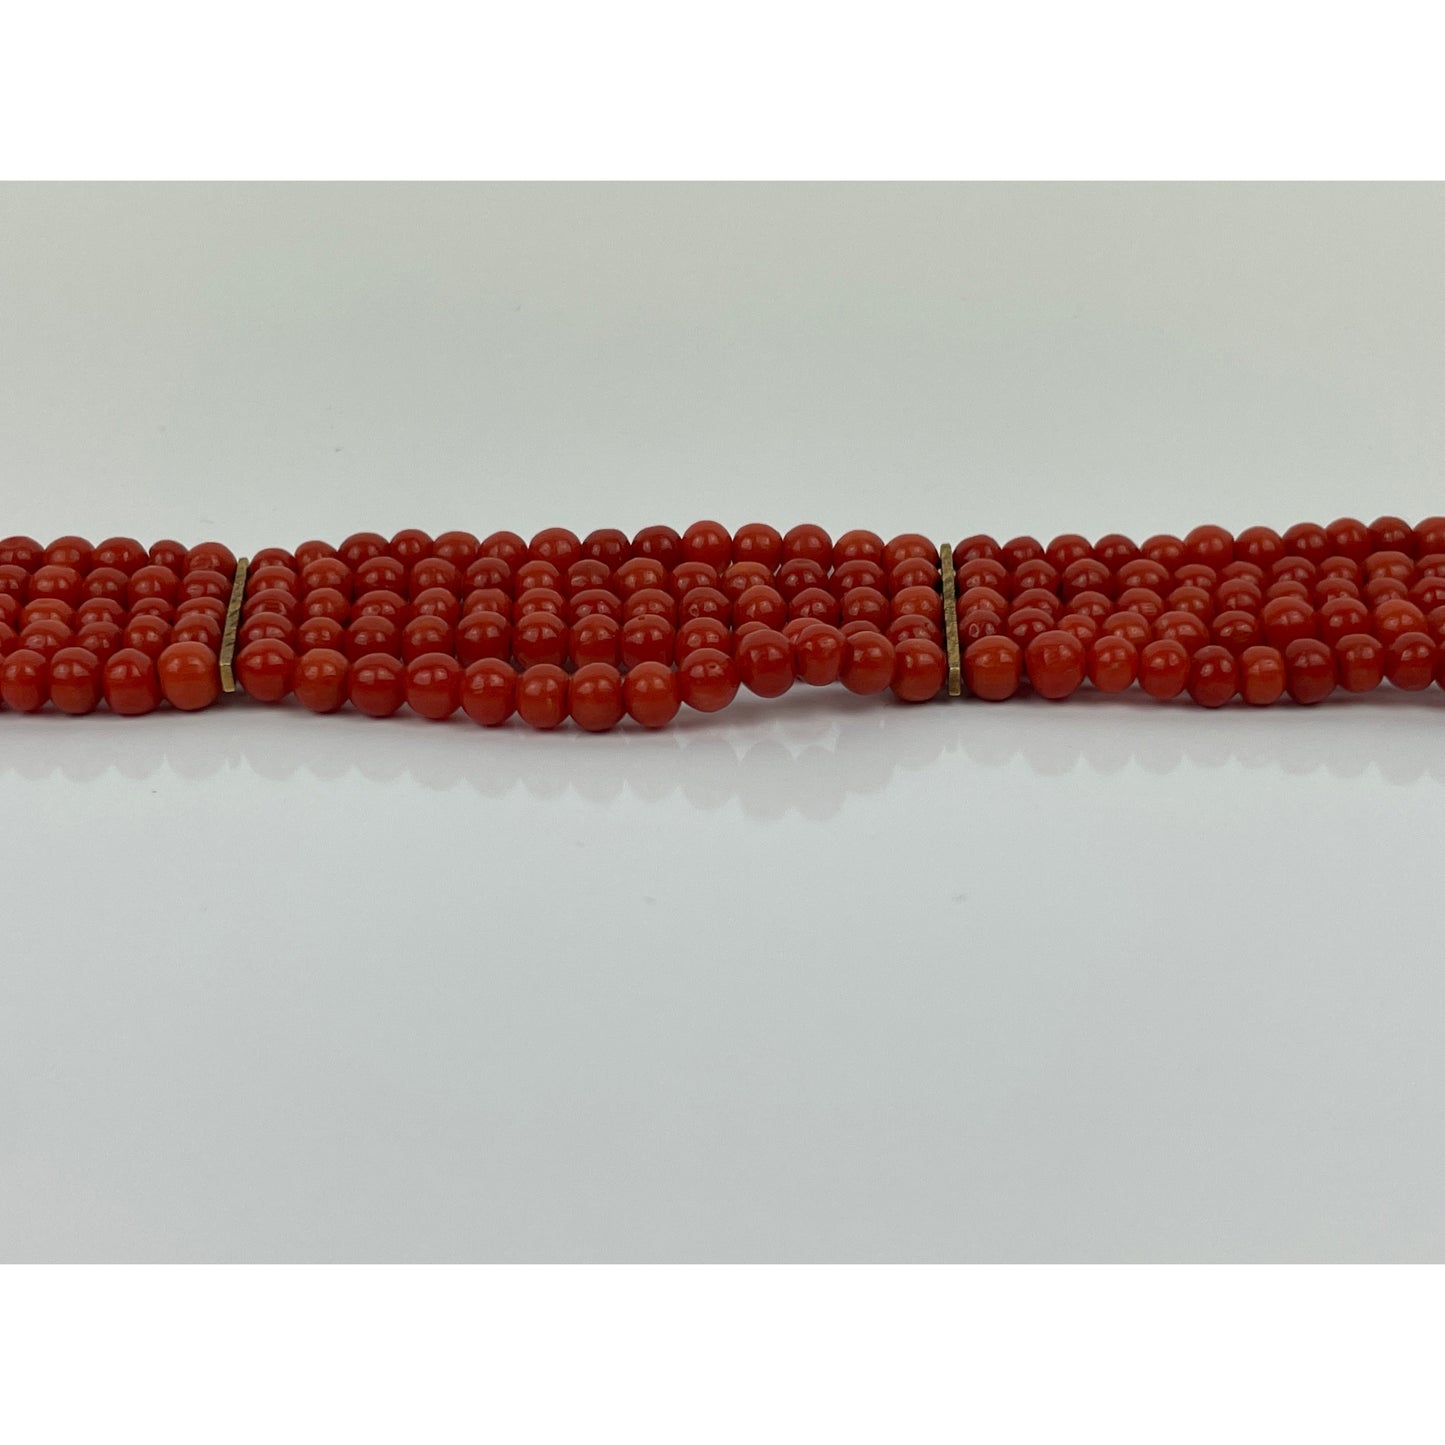 Vintage 18k Red Coral Bracelet